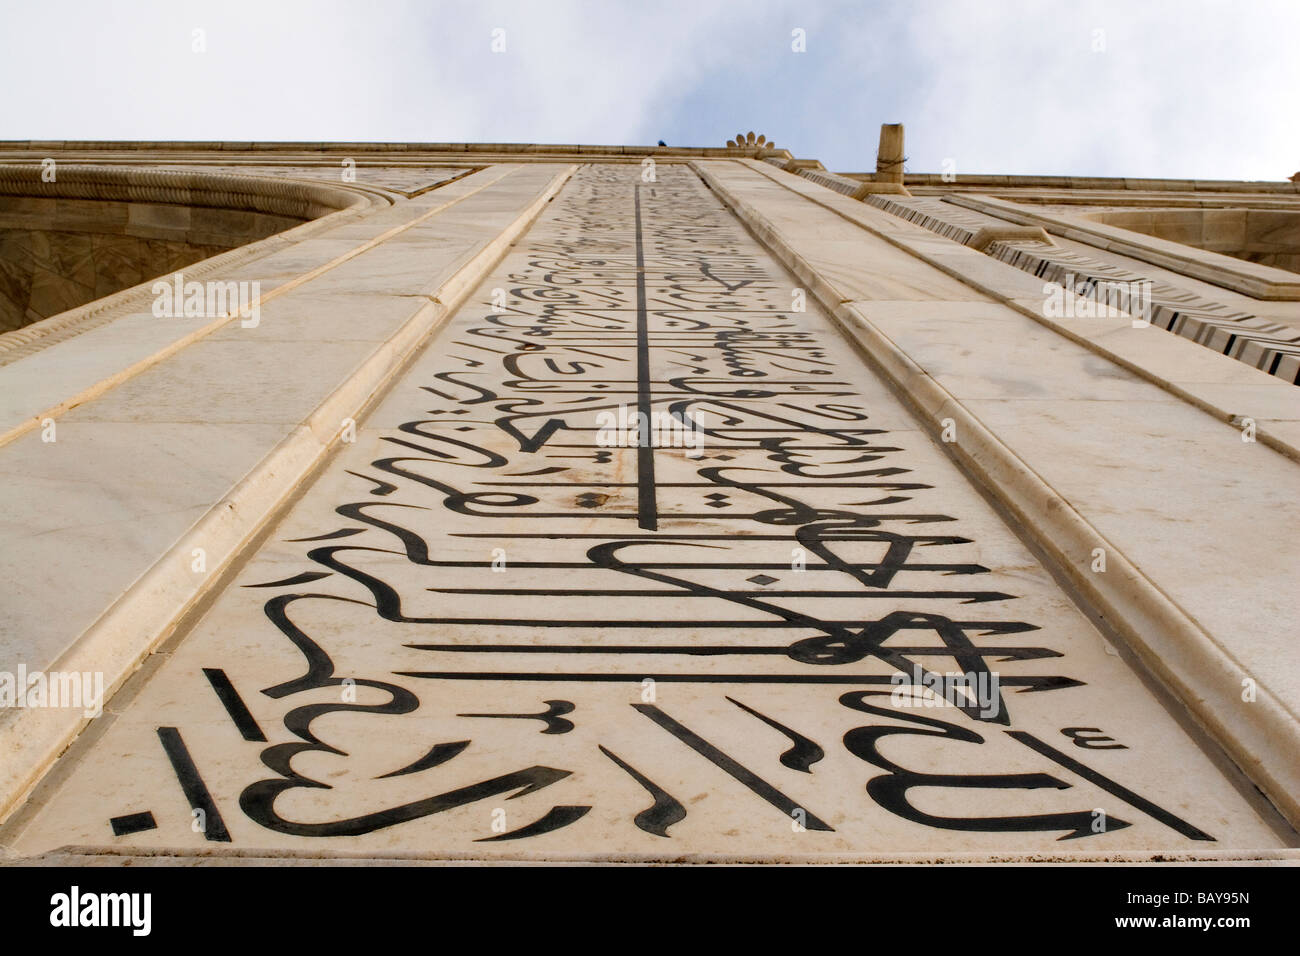 La calligrafia, iscrizioni dal Corano, ornano la facciata del Taj Mahal di Agra, India. Foto Stock